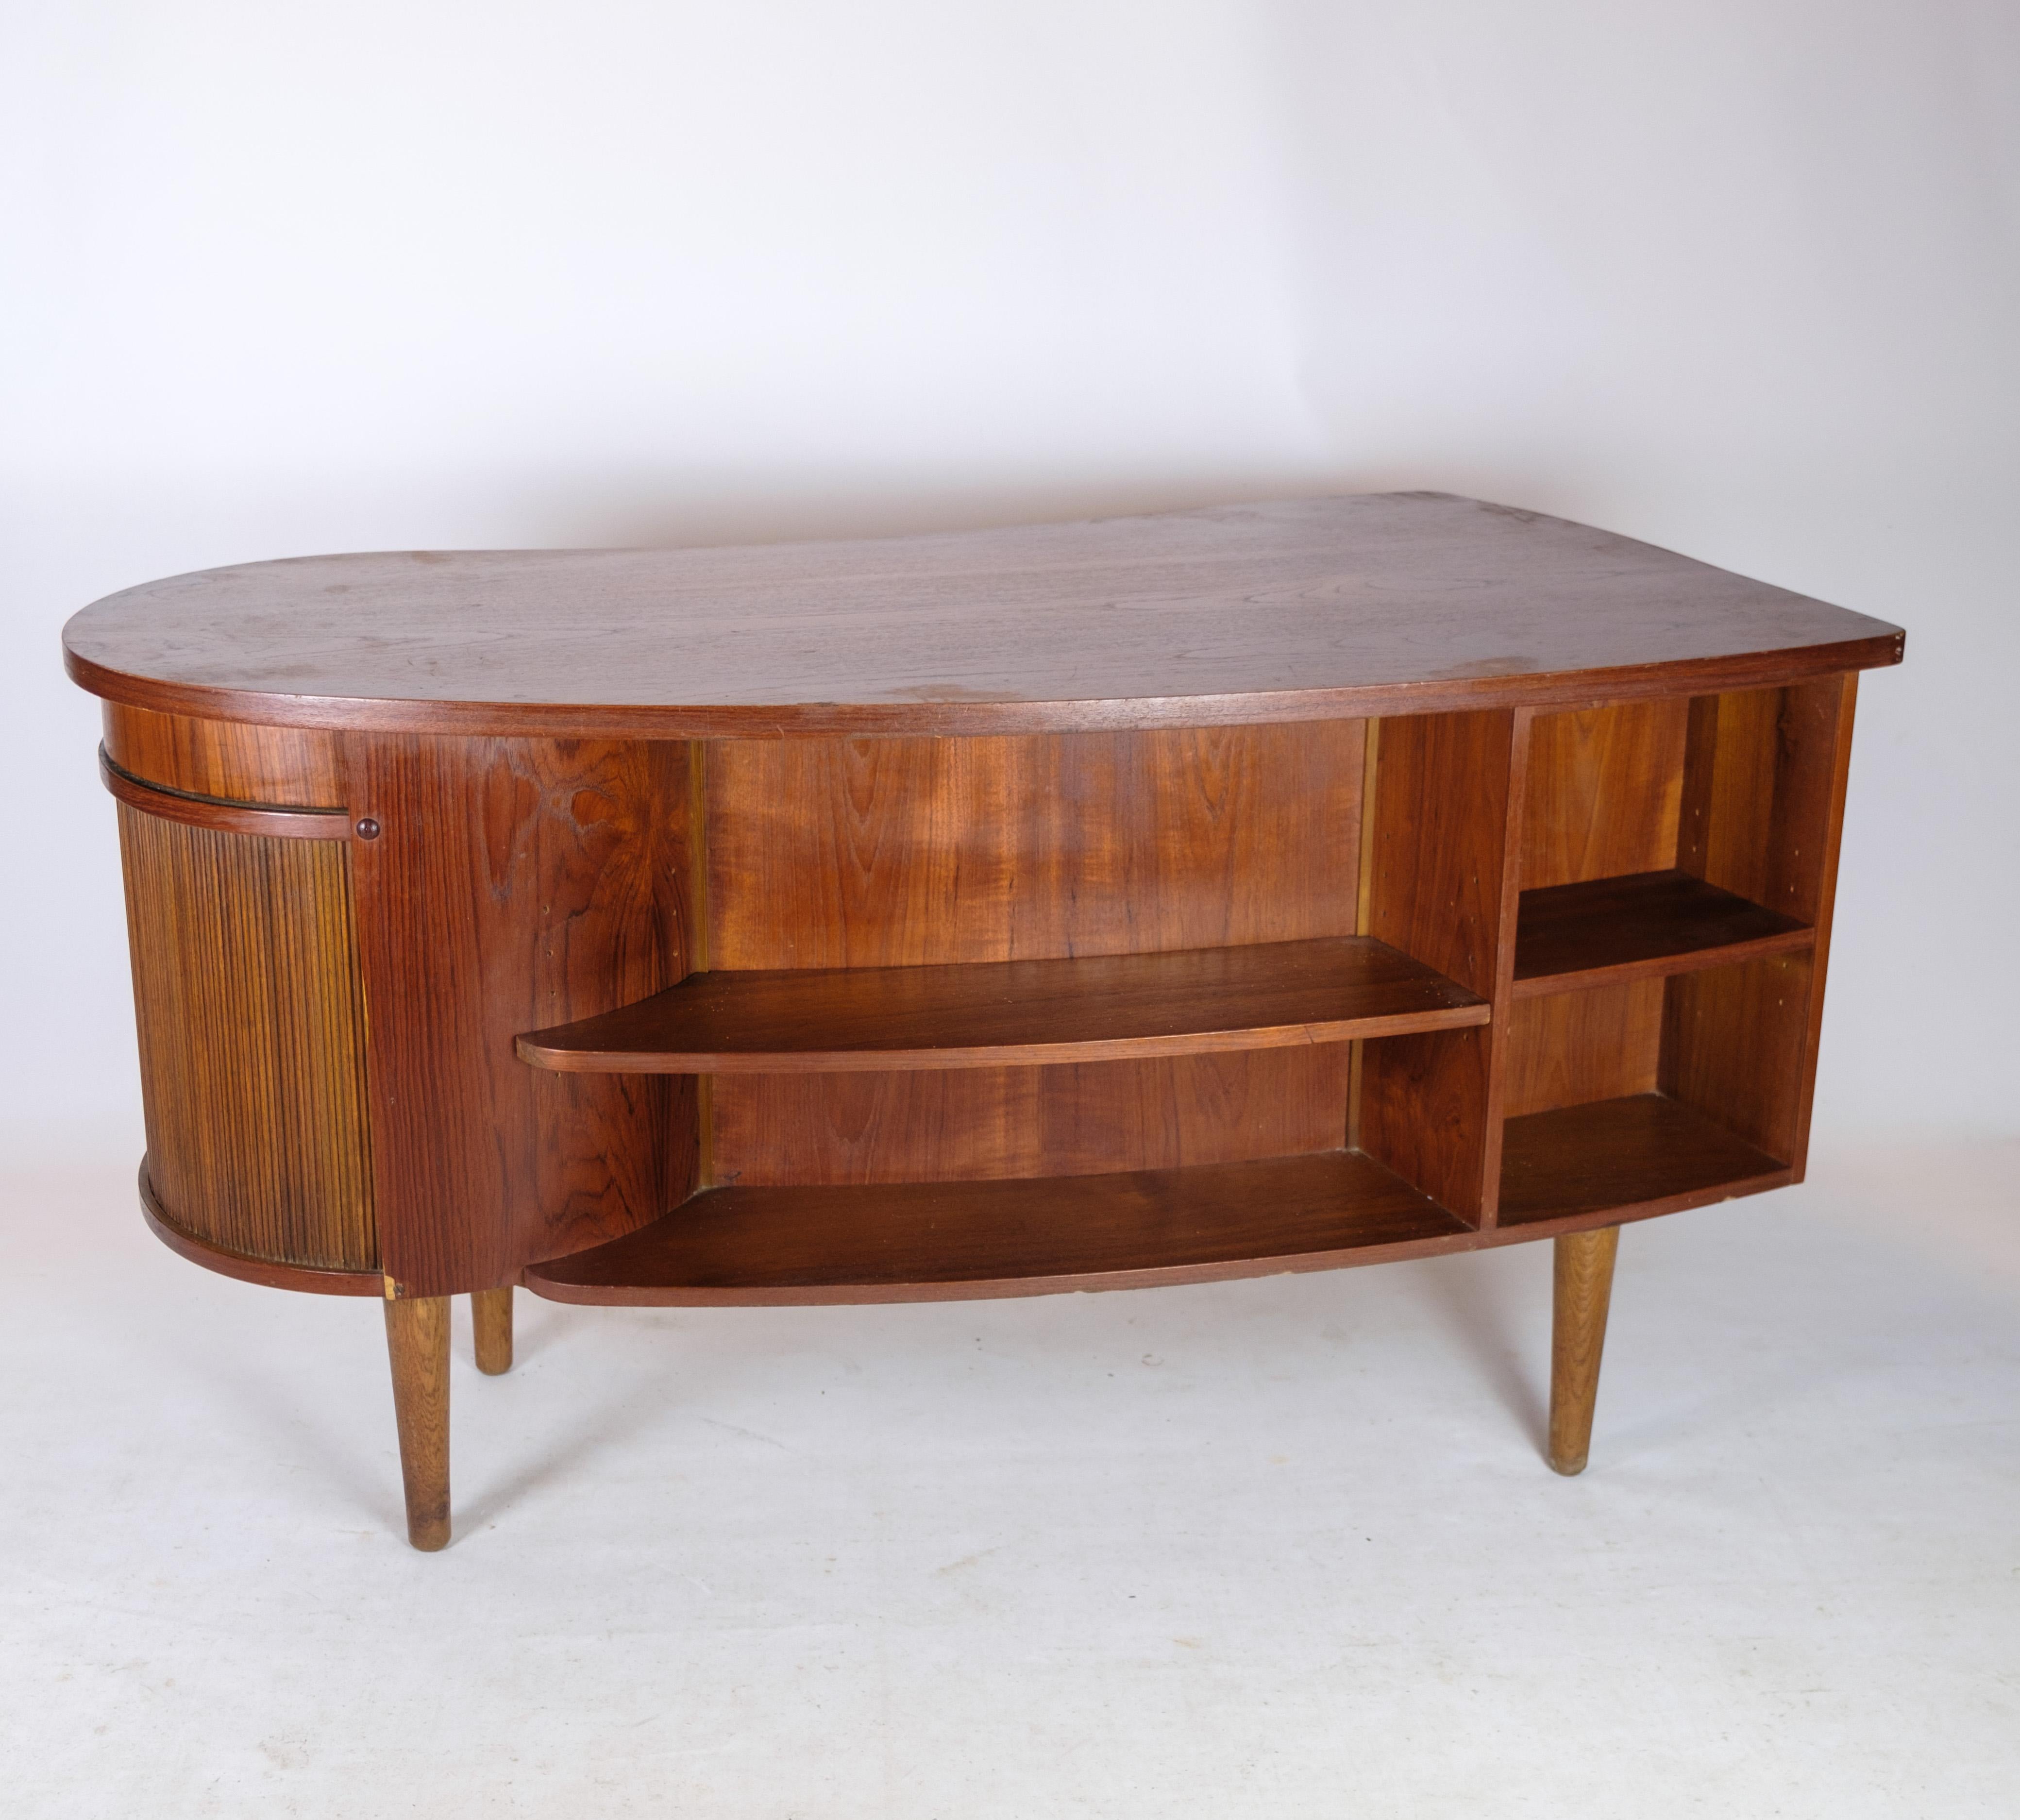 Desk in Teak wood model 54 by Kai Kristiansen and Feldballes furniture from 1954 For Sale 1